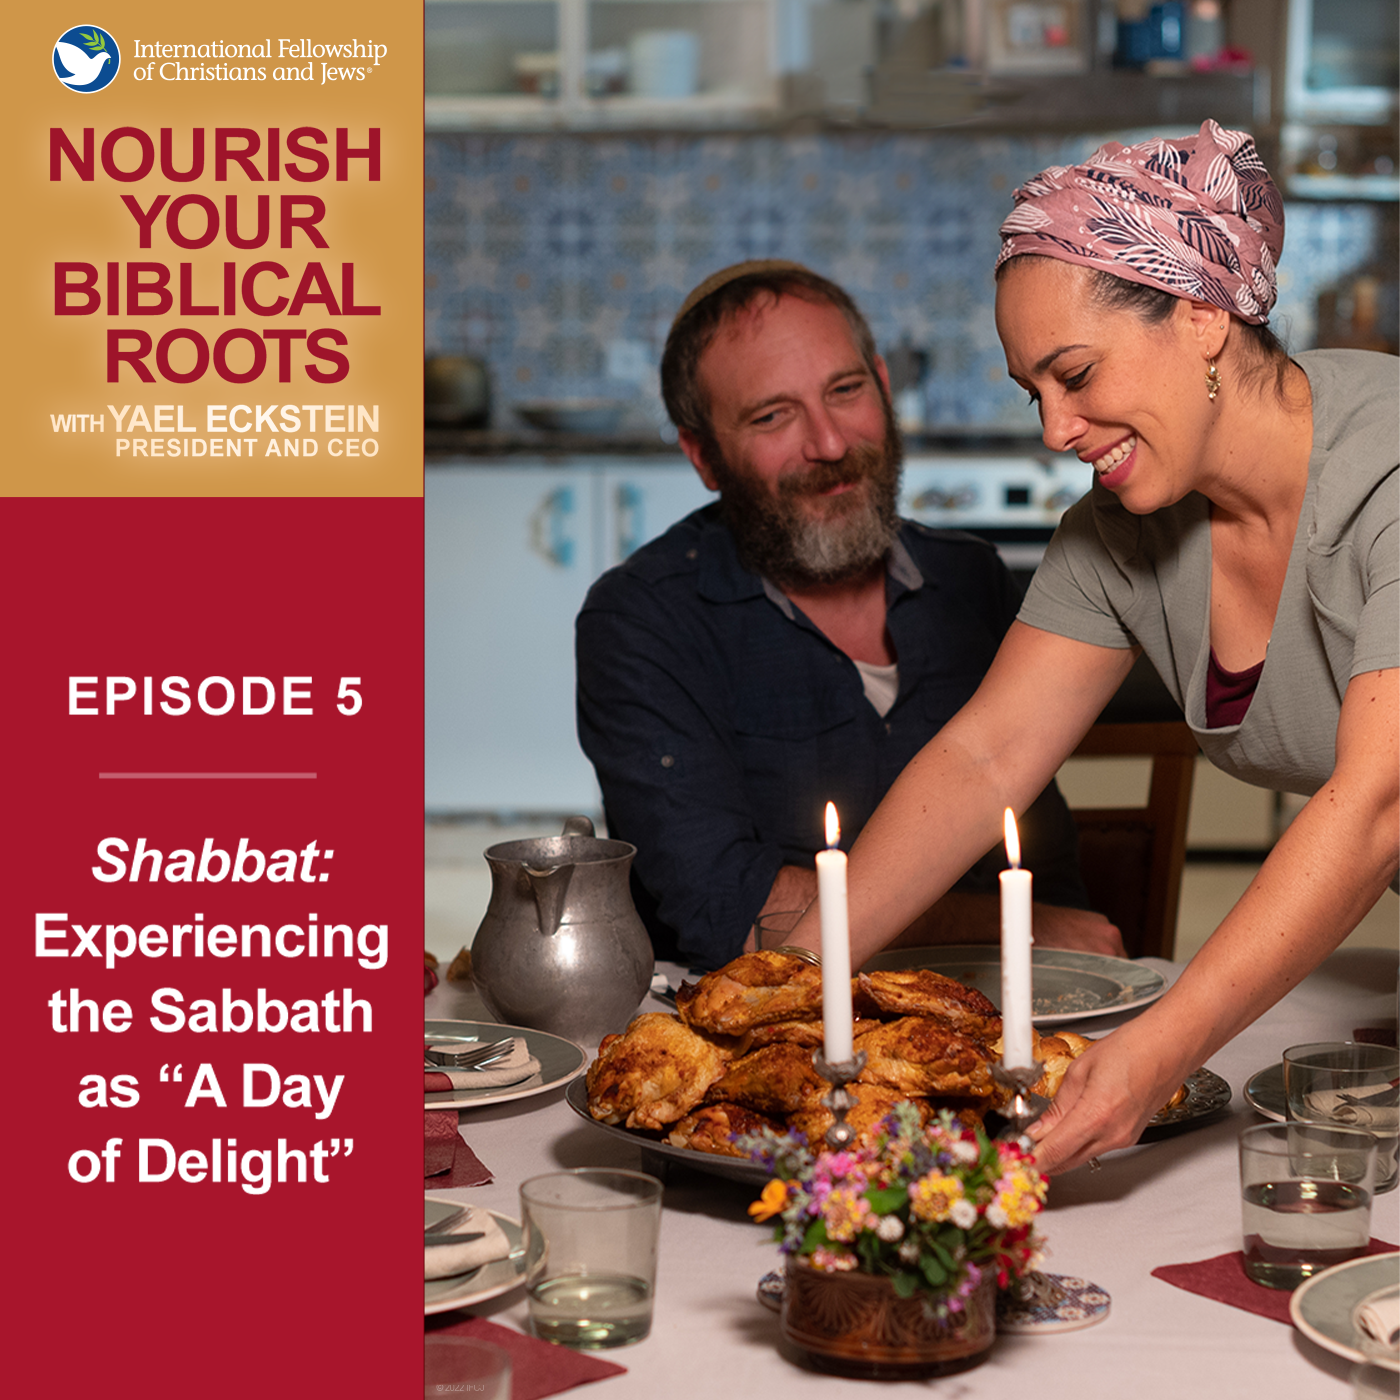 Shabbat: Experiencing the Sabbath as a 